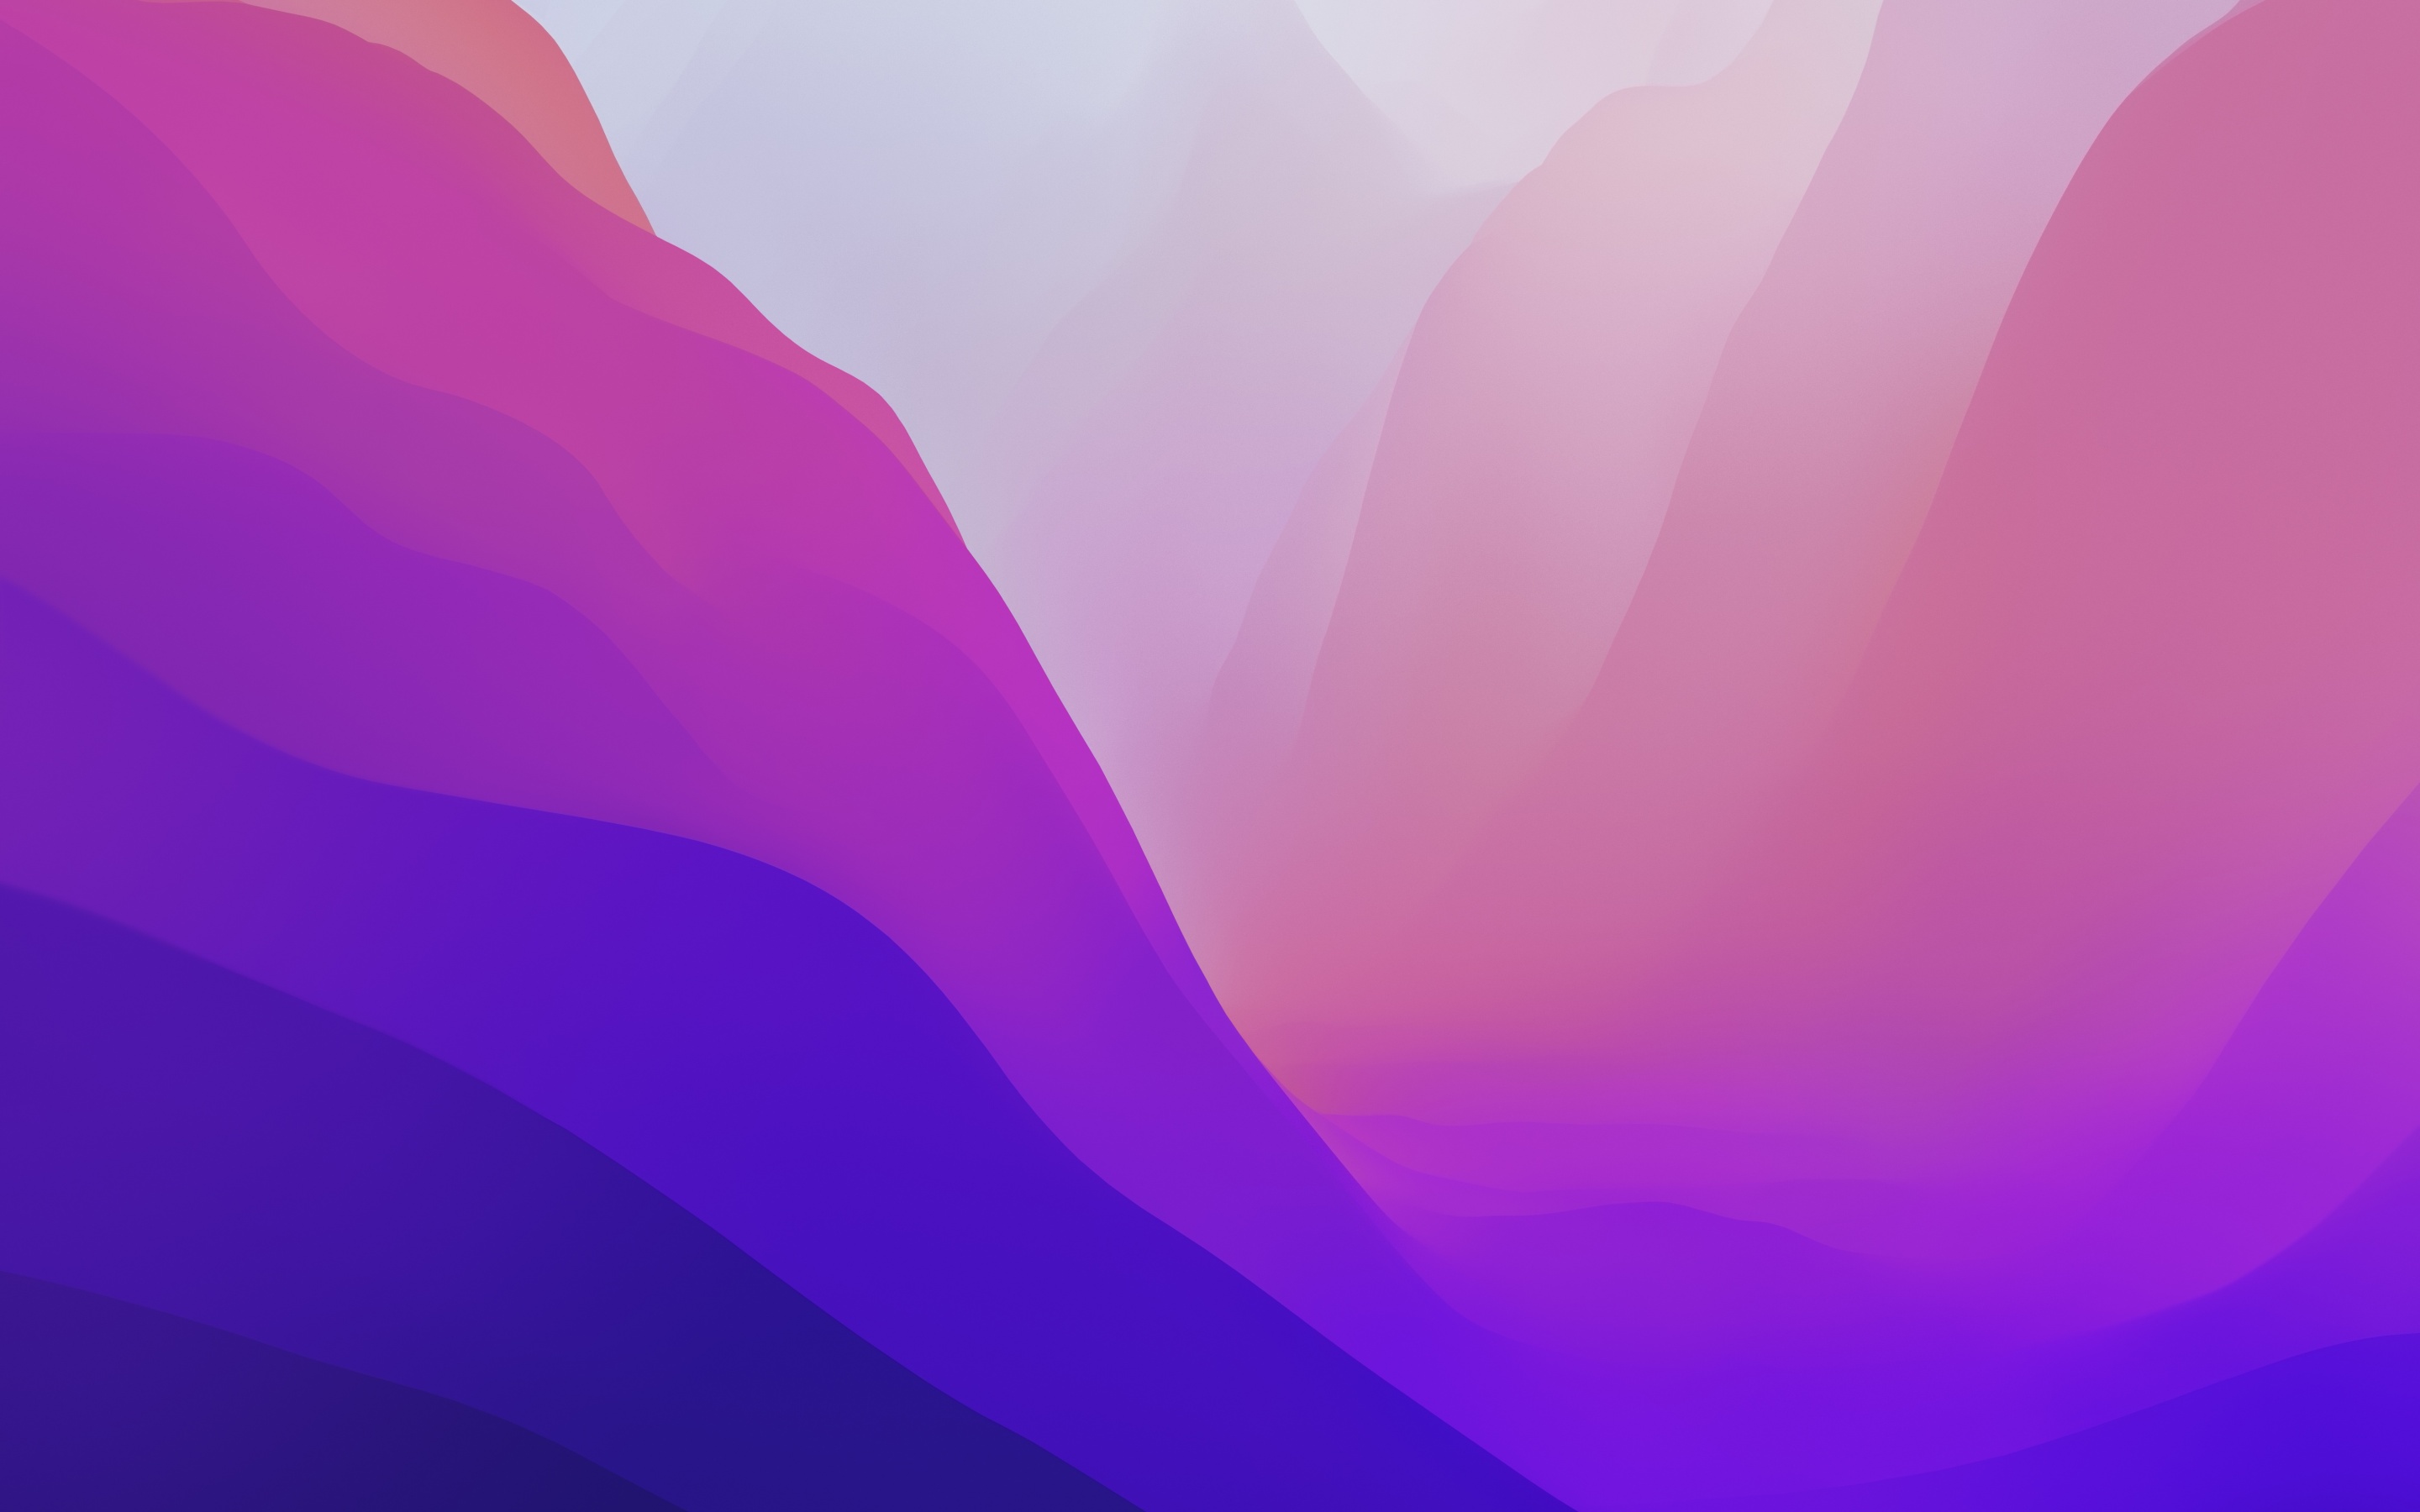 Với độ phân giải 4K và màu sắc đa dạng, hình nền Gradient của macOS Monterey WWDC21 sẽ làm cho màn hình của bạn trông thật đặc biệt. Hãy cùng khám phá thế giới màu sắc đa dạng của hình nền này.